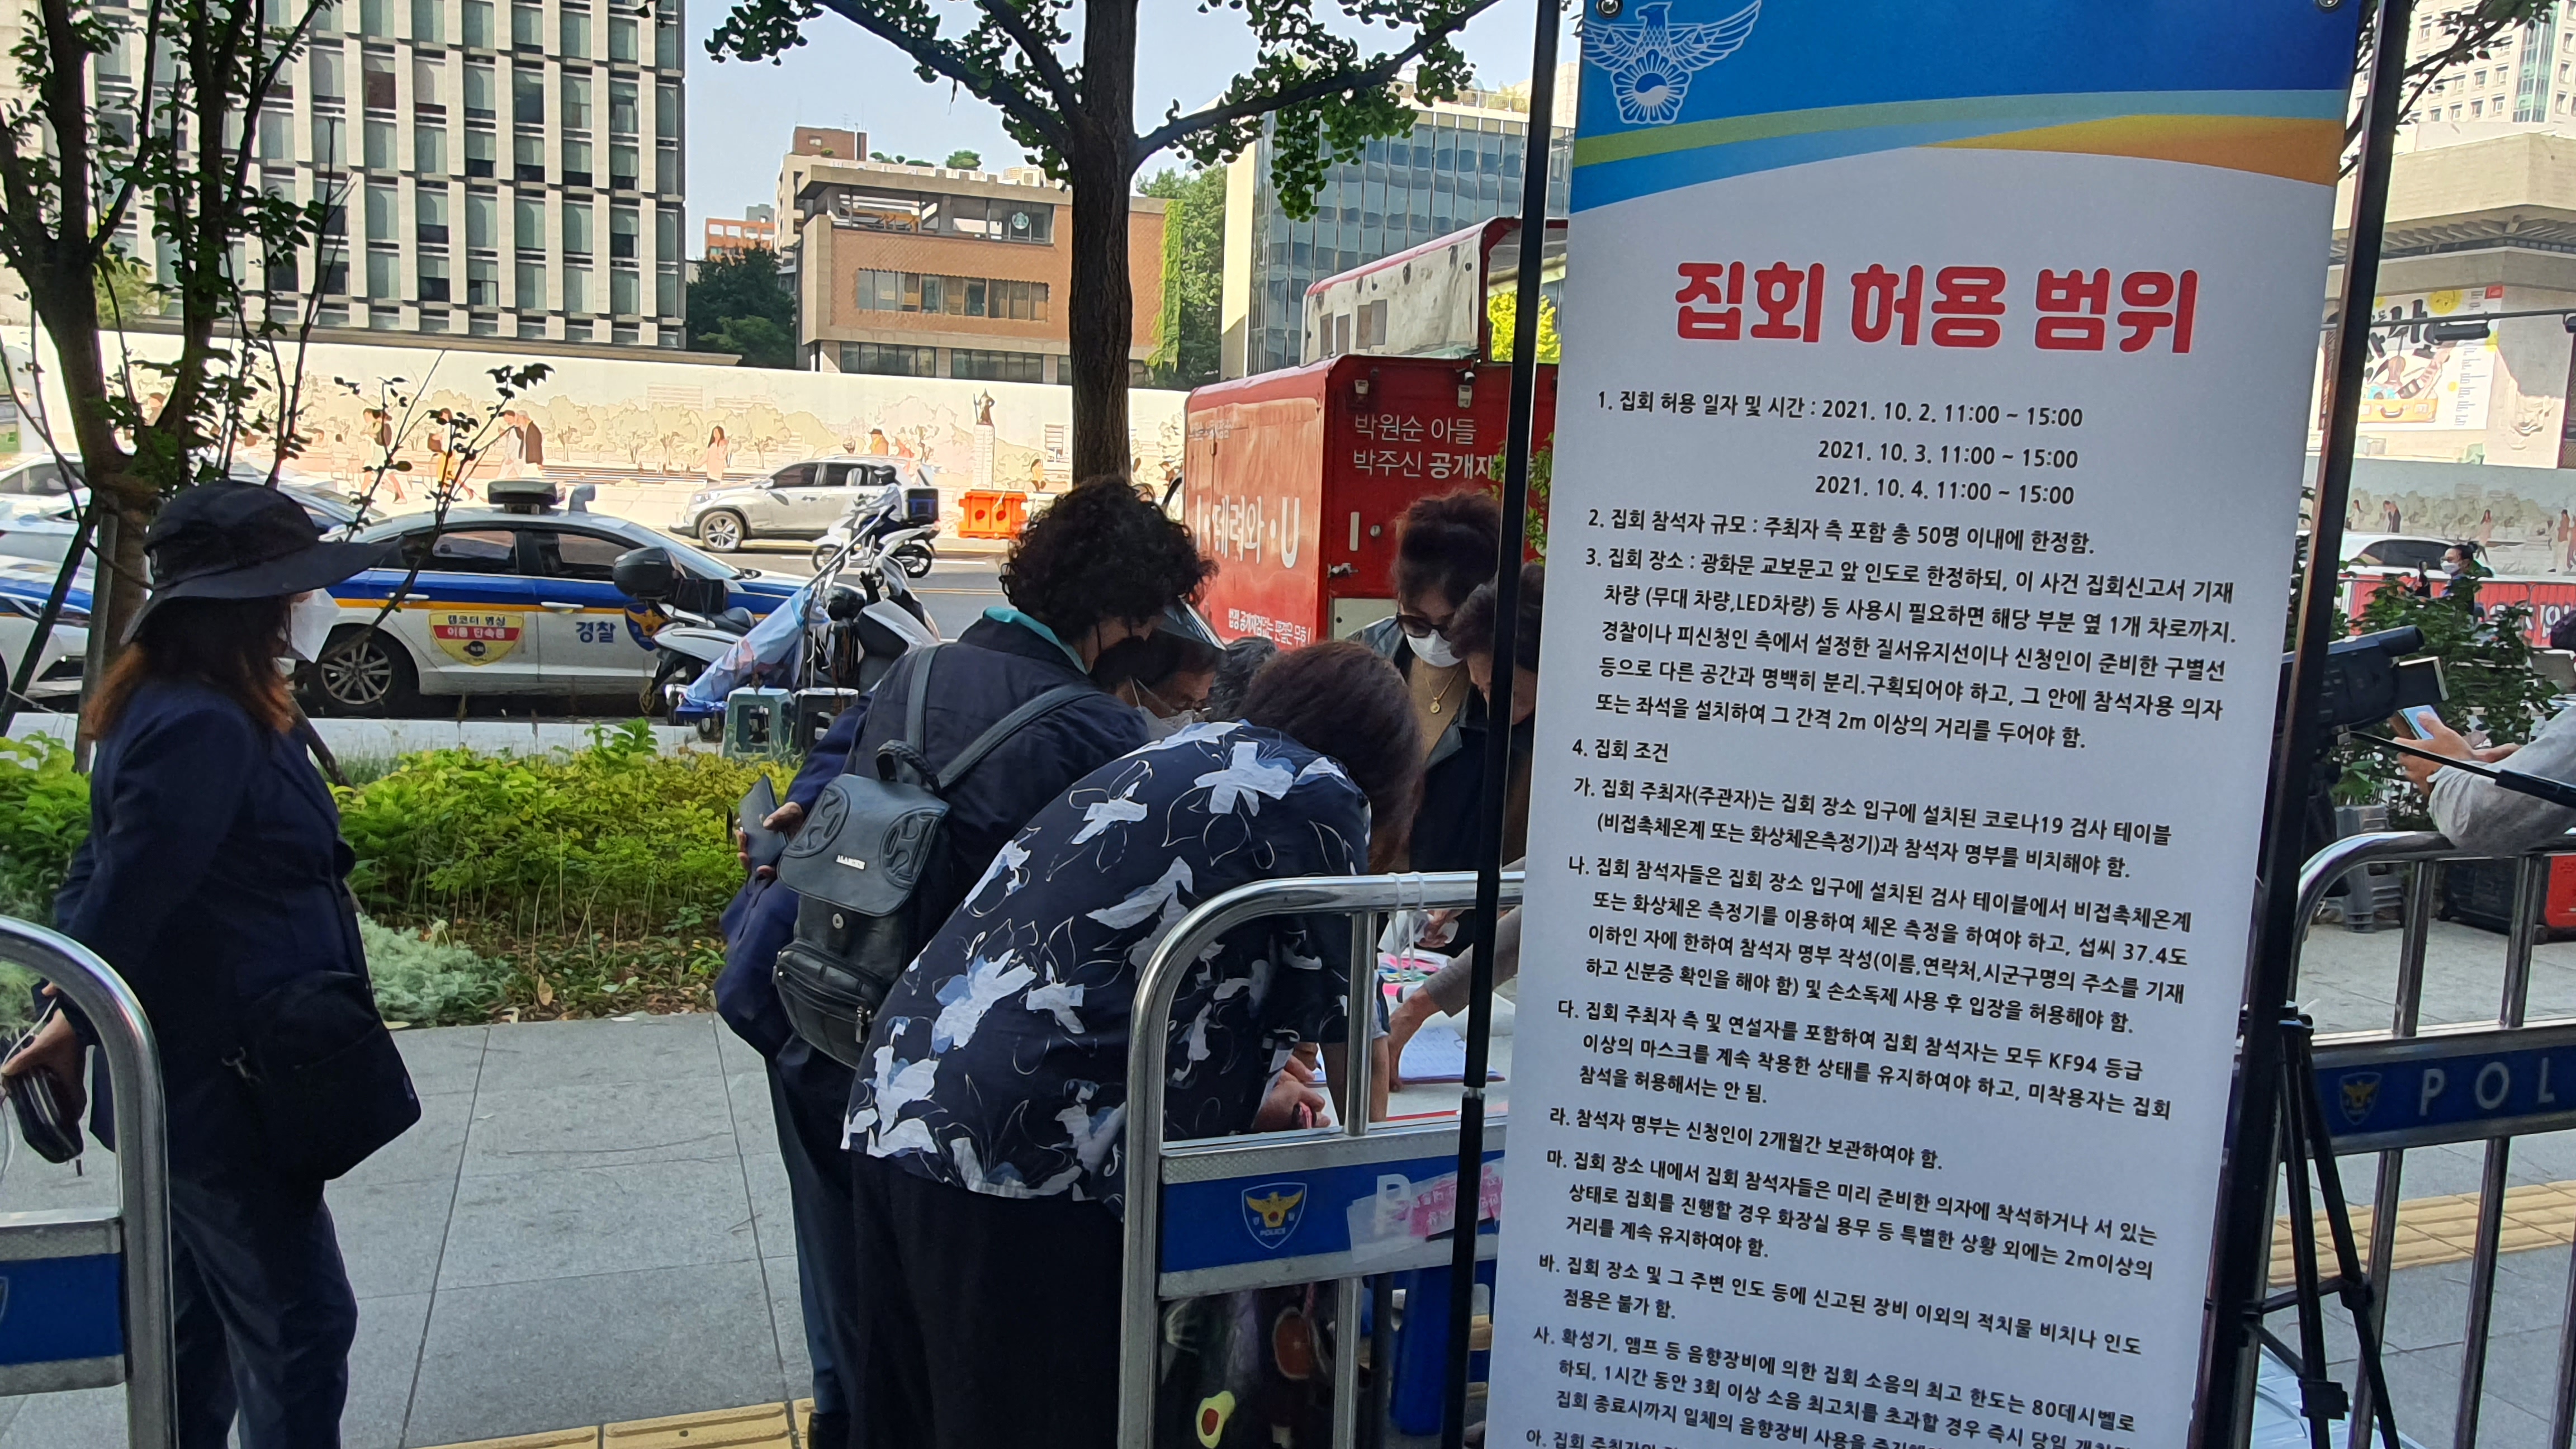 개천절인 3일 서울 종로구 광화문 교보빌딩 앞에서 열린 집회에 입장하려는 참가자들이 출입 명부를 쓰고 있다. 법원은 50인에 한해 집회를 일부 허용했다. 손지민 기자 sjm@soeul.co.kr